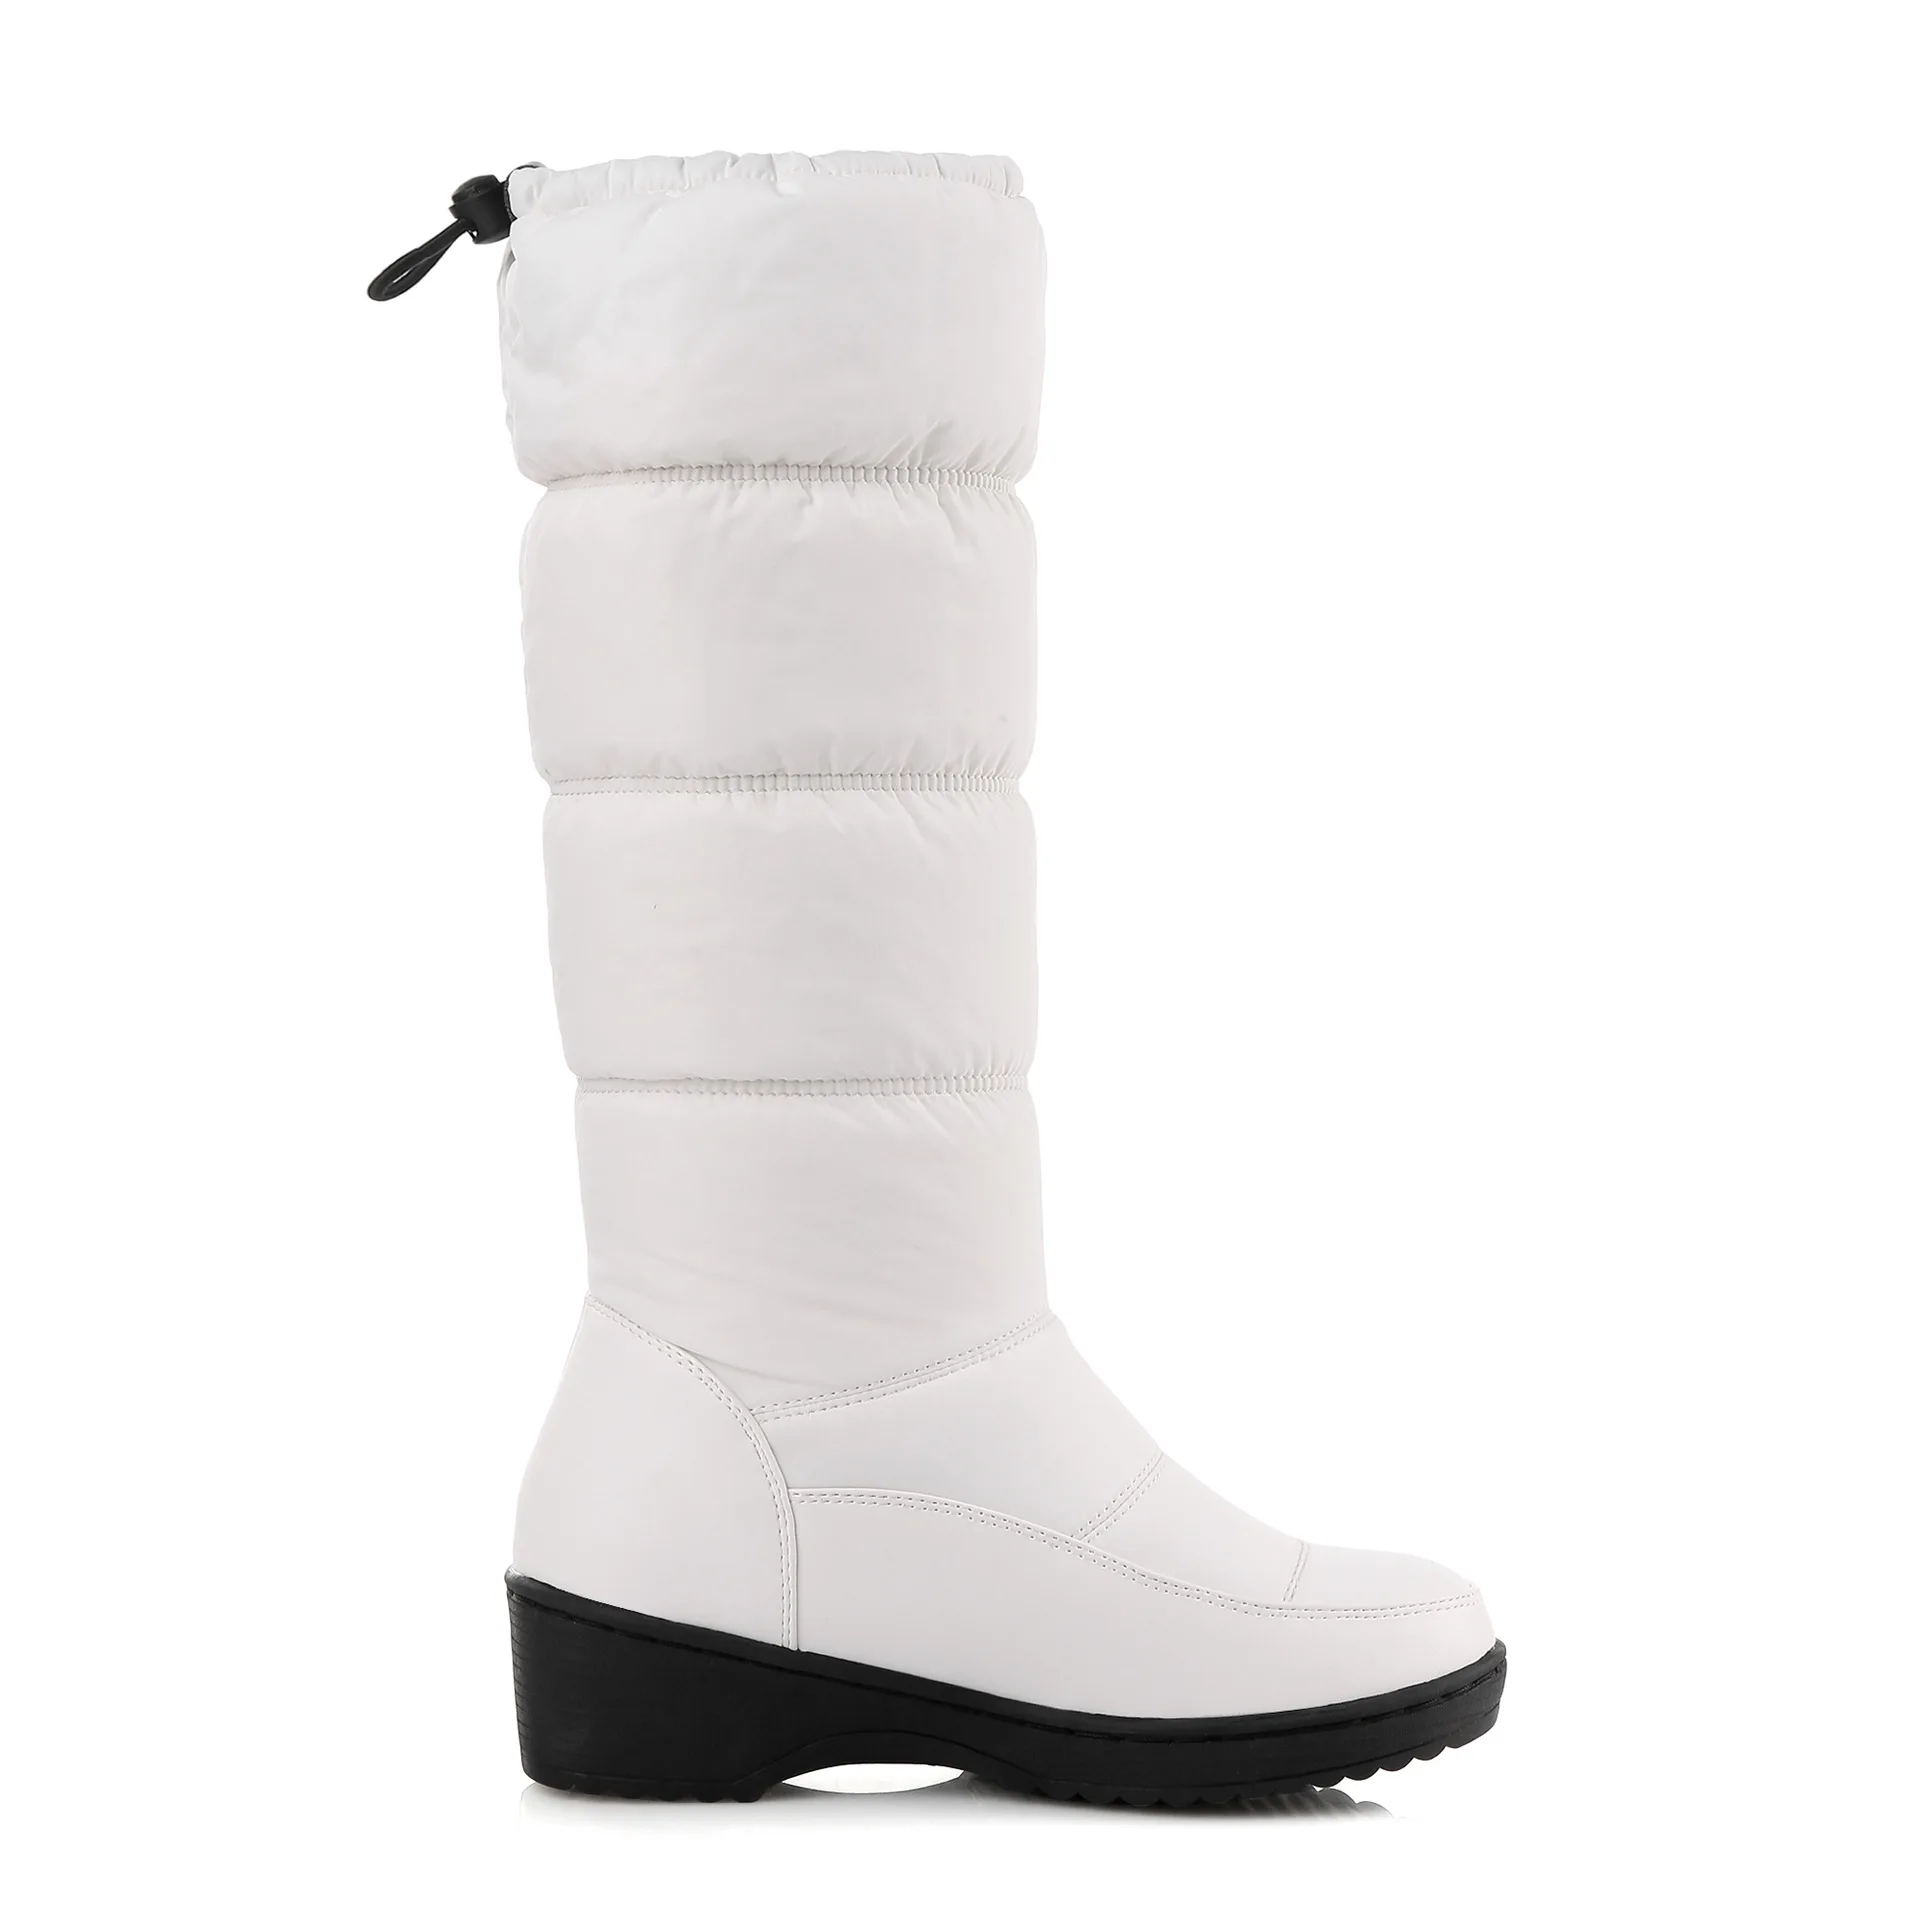 LTARTA зимние Для женщин обувь, теплые сапоги белого цвета обувь из материала на основе хлопка, с флисовой подкладкой, хлопковая плотная ботинки с мягкой подошвой сдобы торт снежные сапоги HX-85